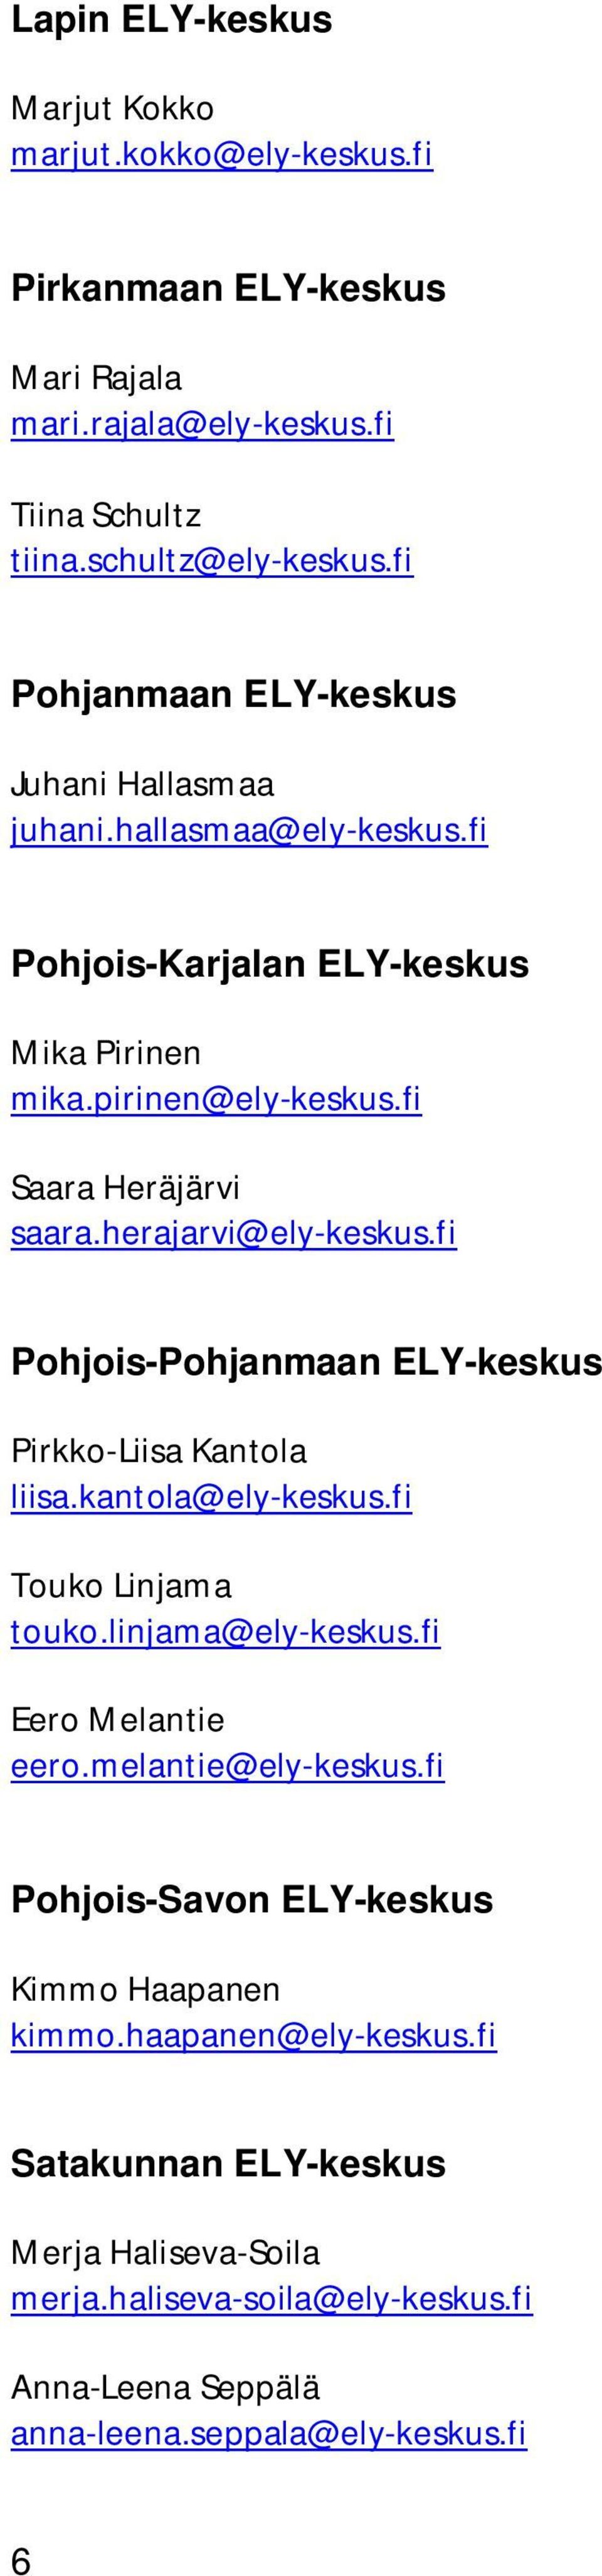 herajarvi@ely-keskus.fi Pohjois-Pohjanmaan ELY-keskus Pirkko-Liisa Kantola liisa.kantola@ely-keskus.fi Touko Linjama touko.linjama@ely-keskus.fi Eero Melantie eero.